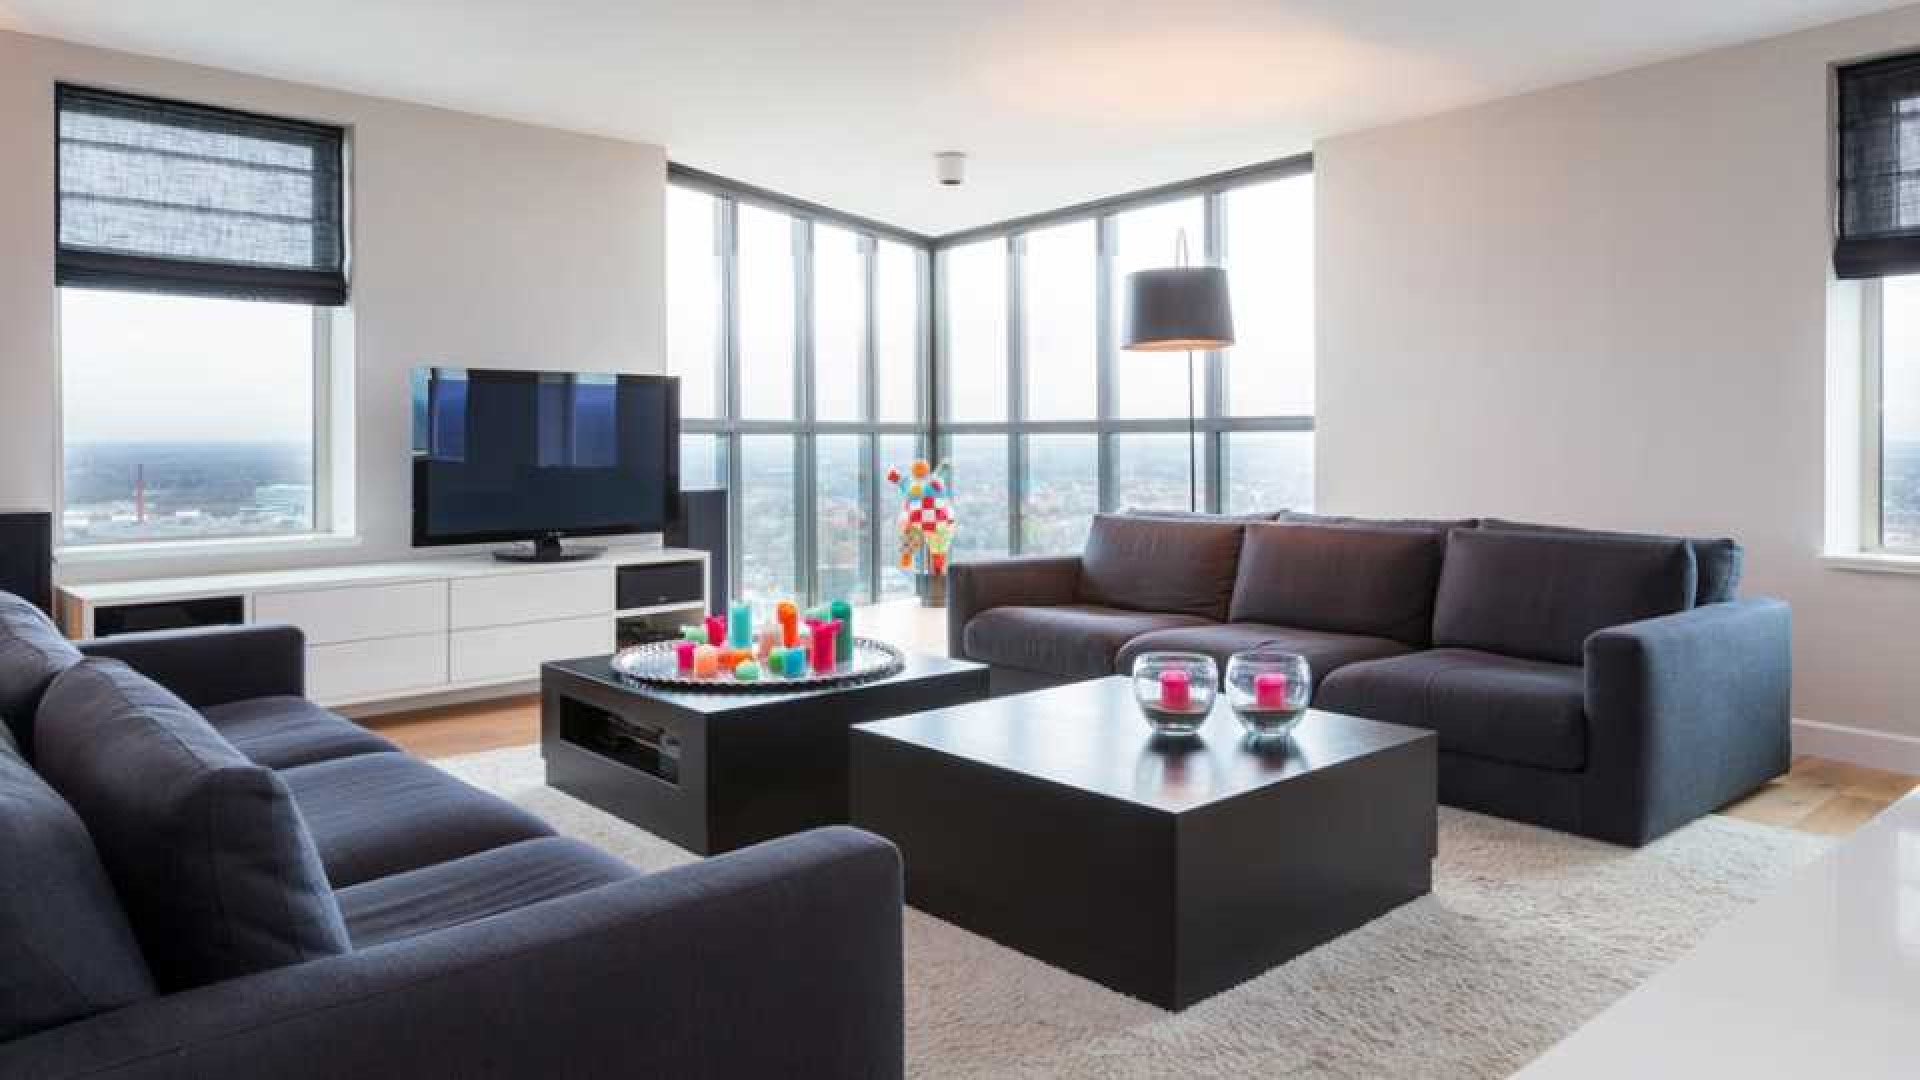 Amanda Krabbe en haar man Harrie Kolen zetten hun luxe penthouse in stille verkoop. Zie foto's 1